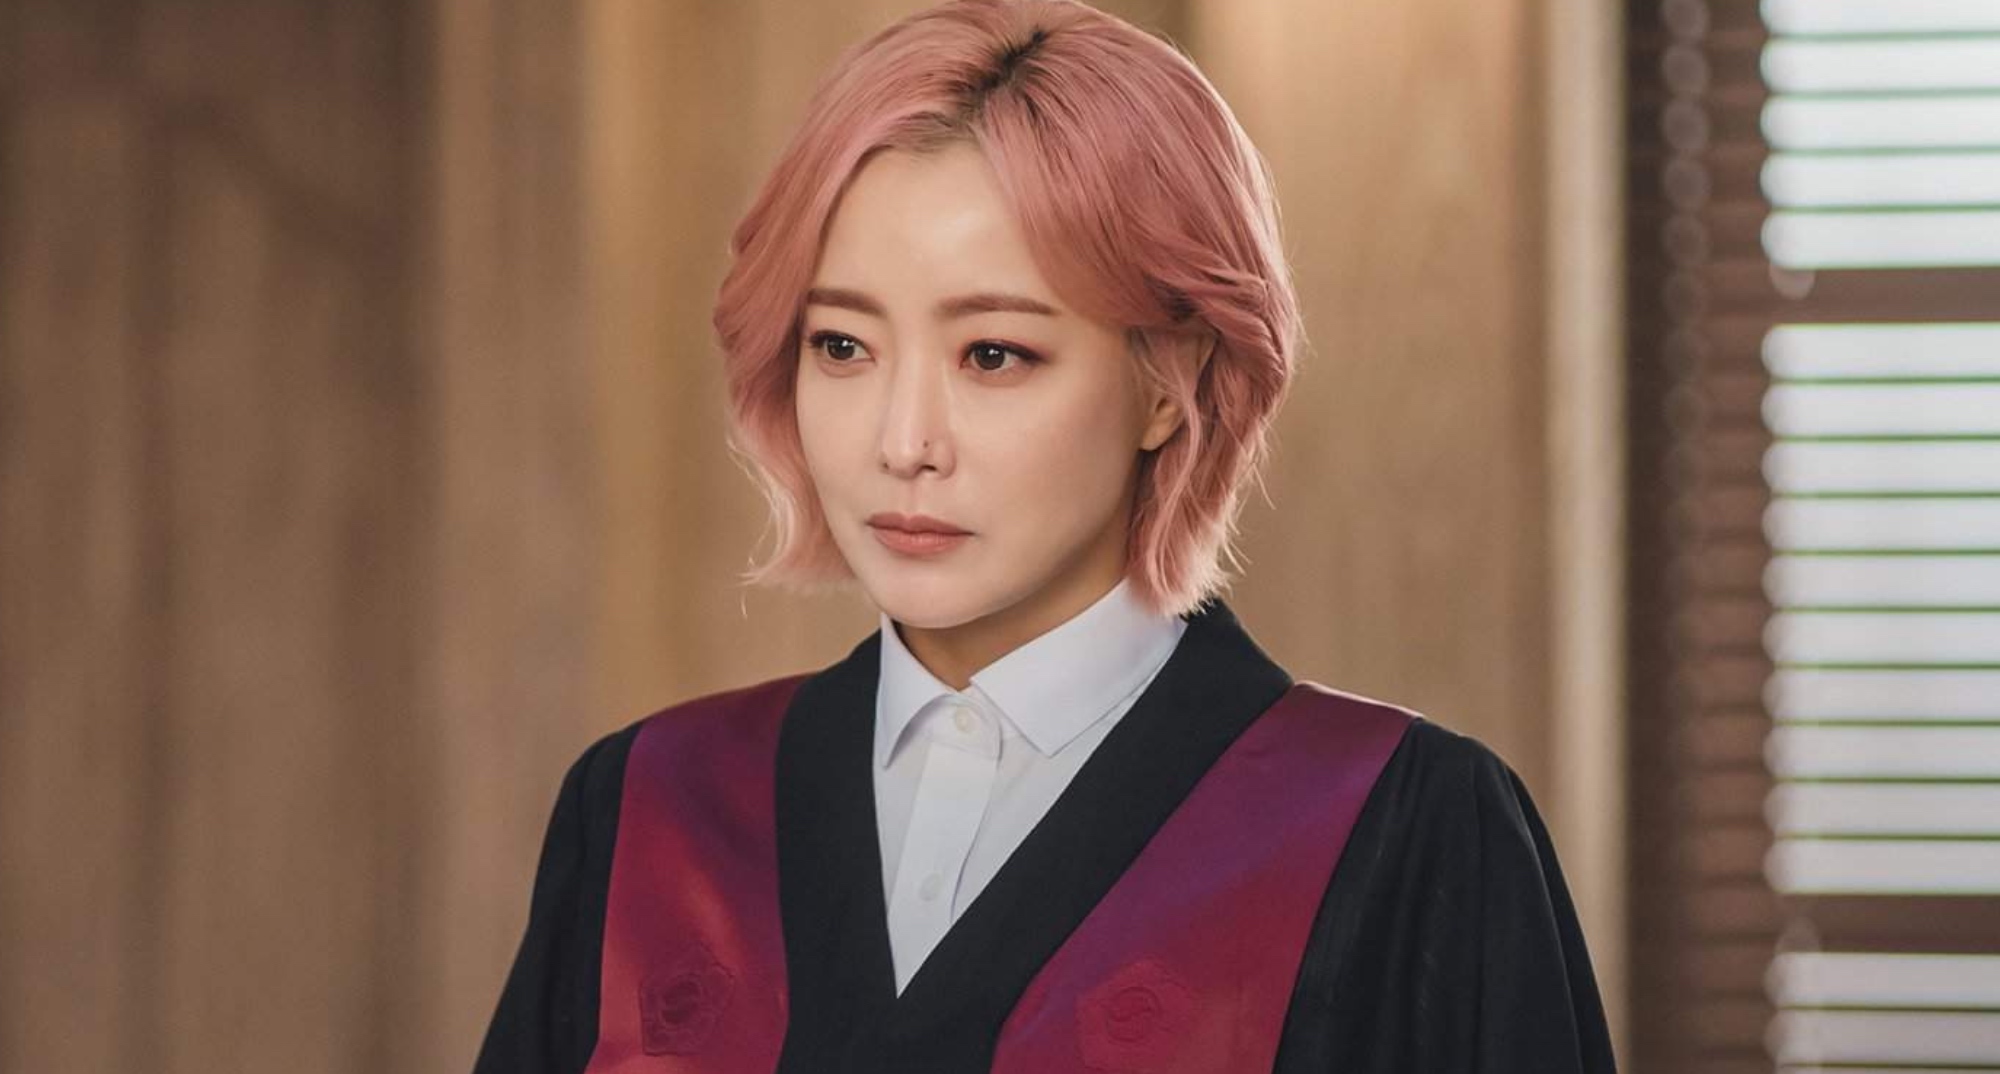 Kim Hee-sun as Goo Ryeon in 'Tomorrow' K-drama wearing judicial robes.